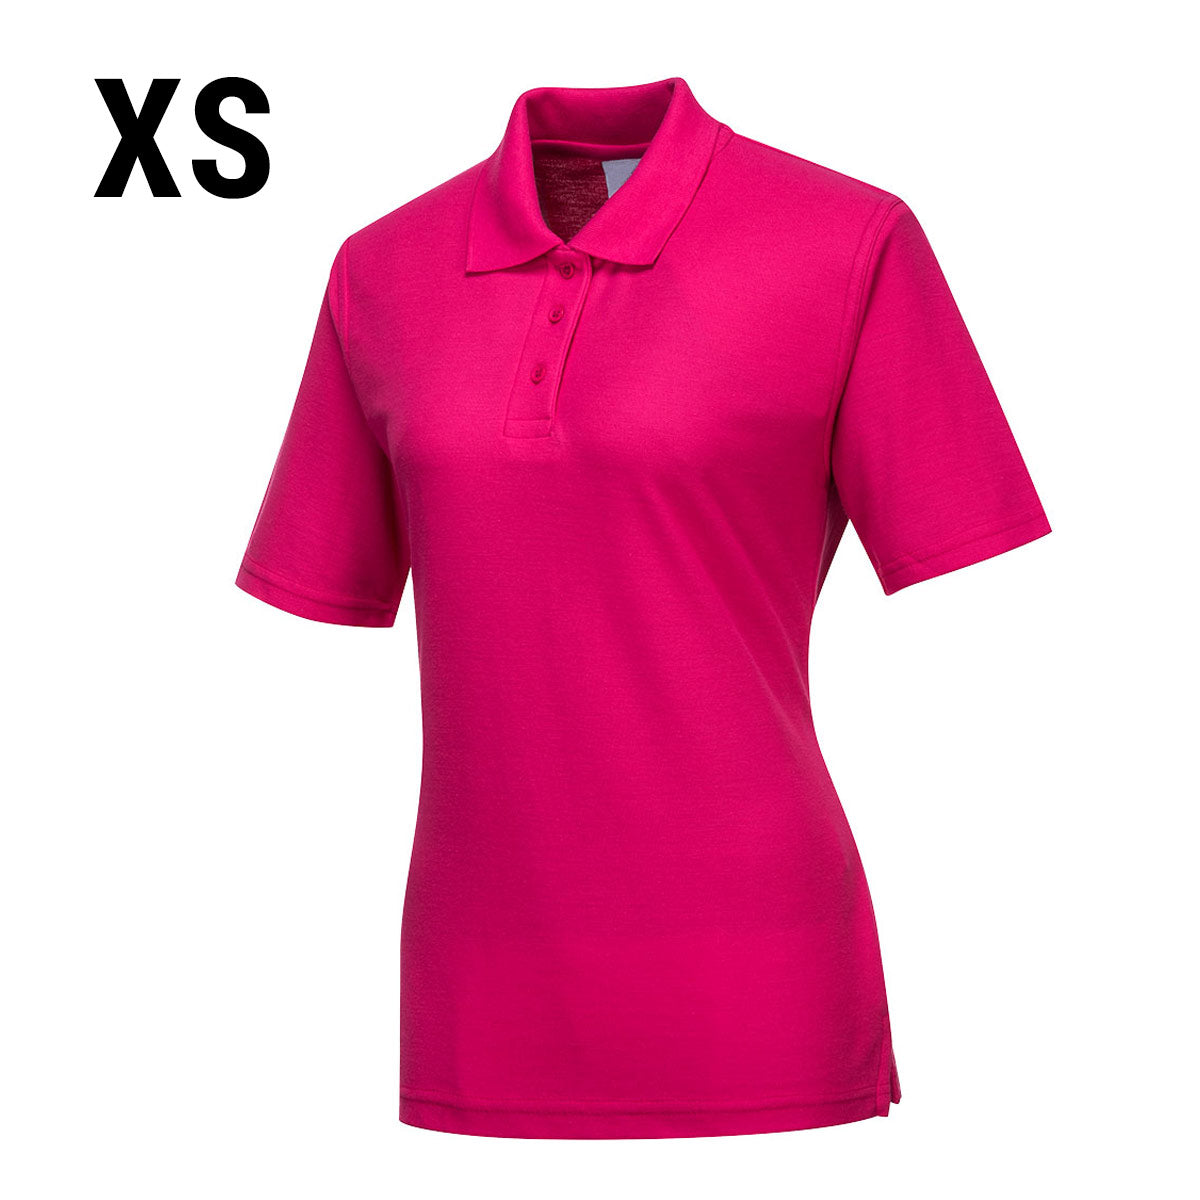 Poloskjorte til damer - Rosa - størrelse: XS